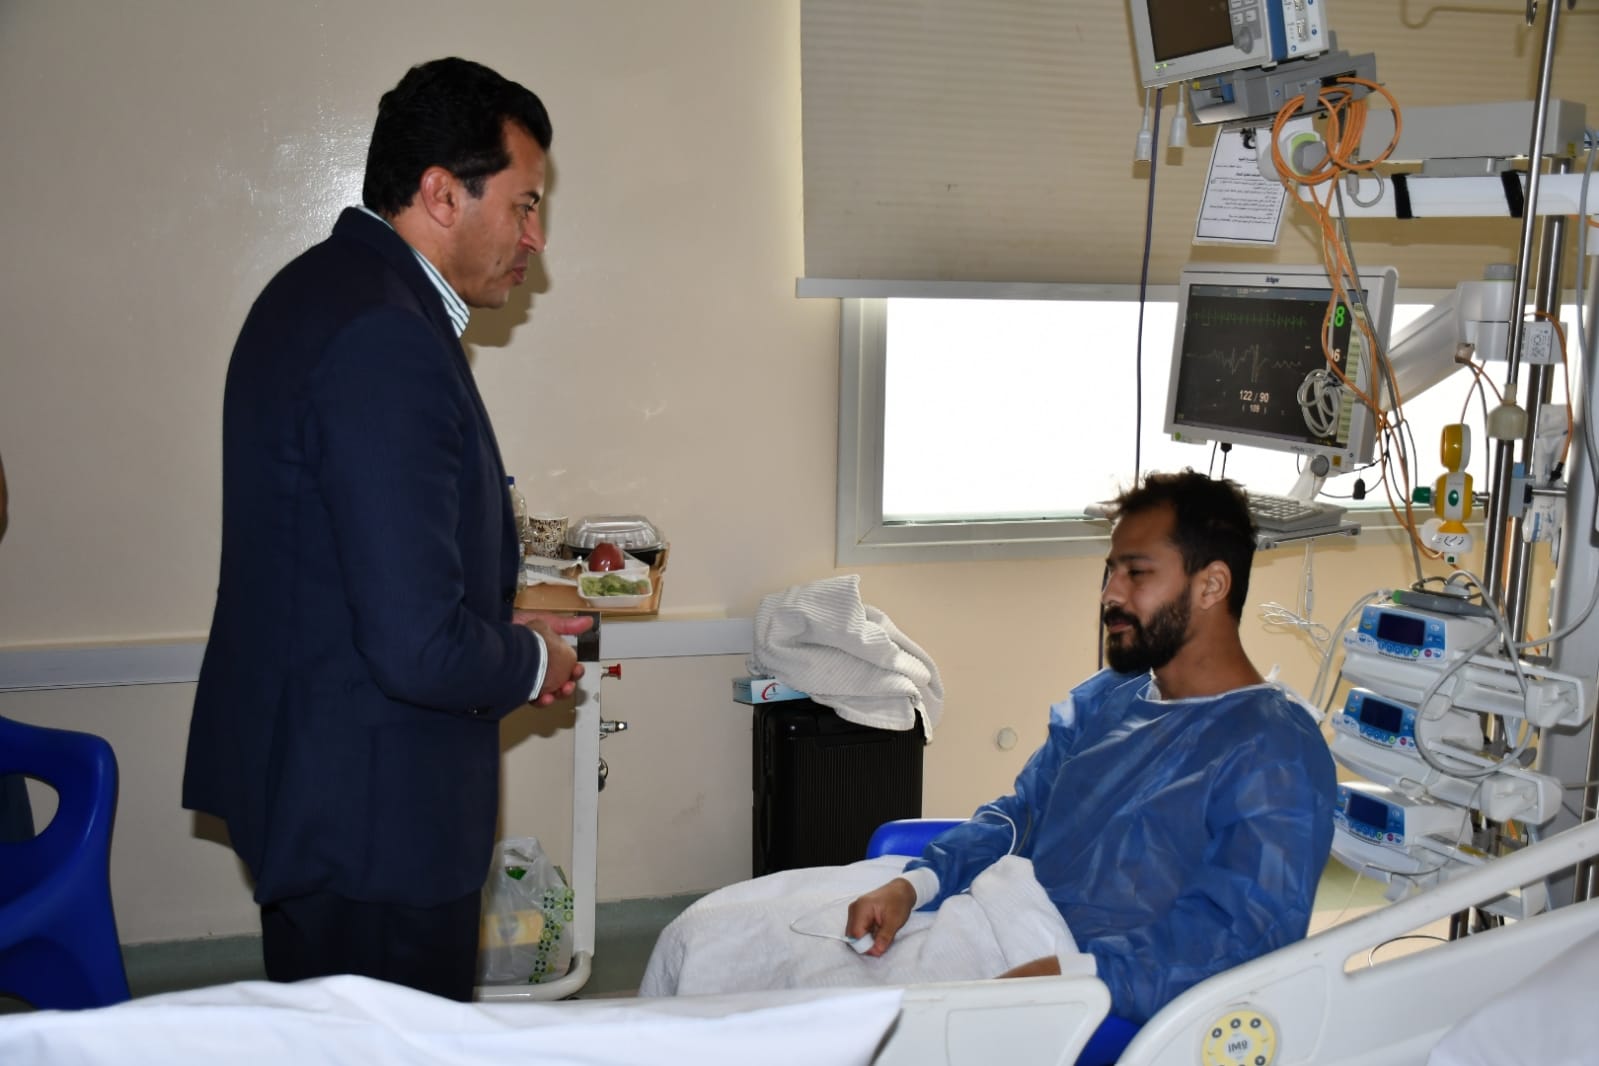 أحمد رفعت يتبادل الحديث مع وزير الرياضة في أول ظهور منذ أزمته (صور)